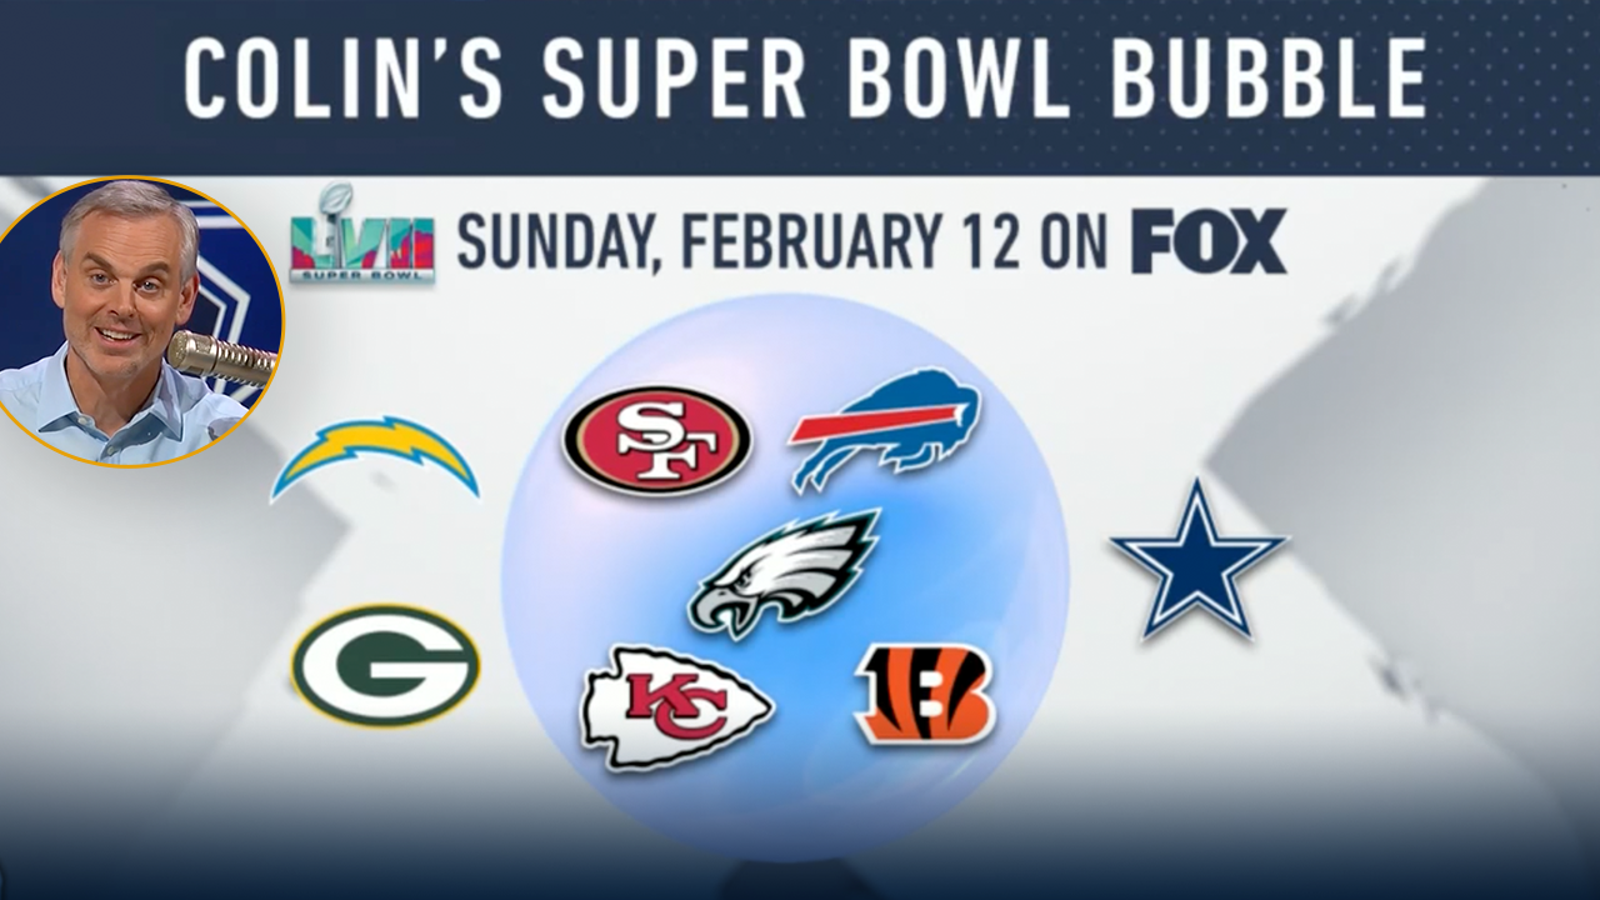 Where do the Dallas Cowboys fall in Colin's Super Bowl Bubble?